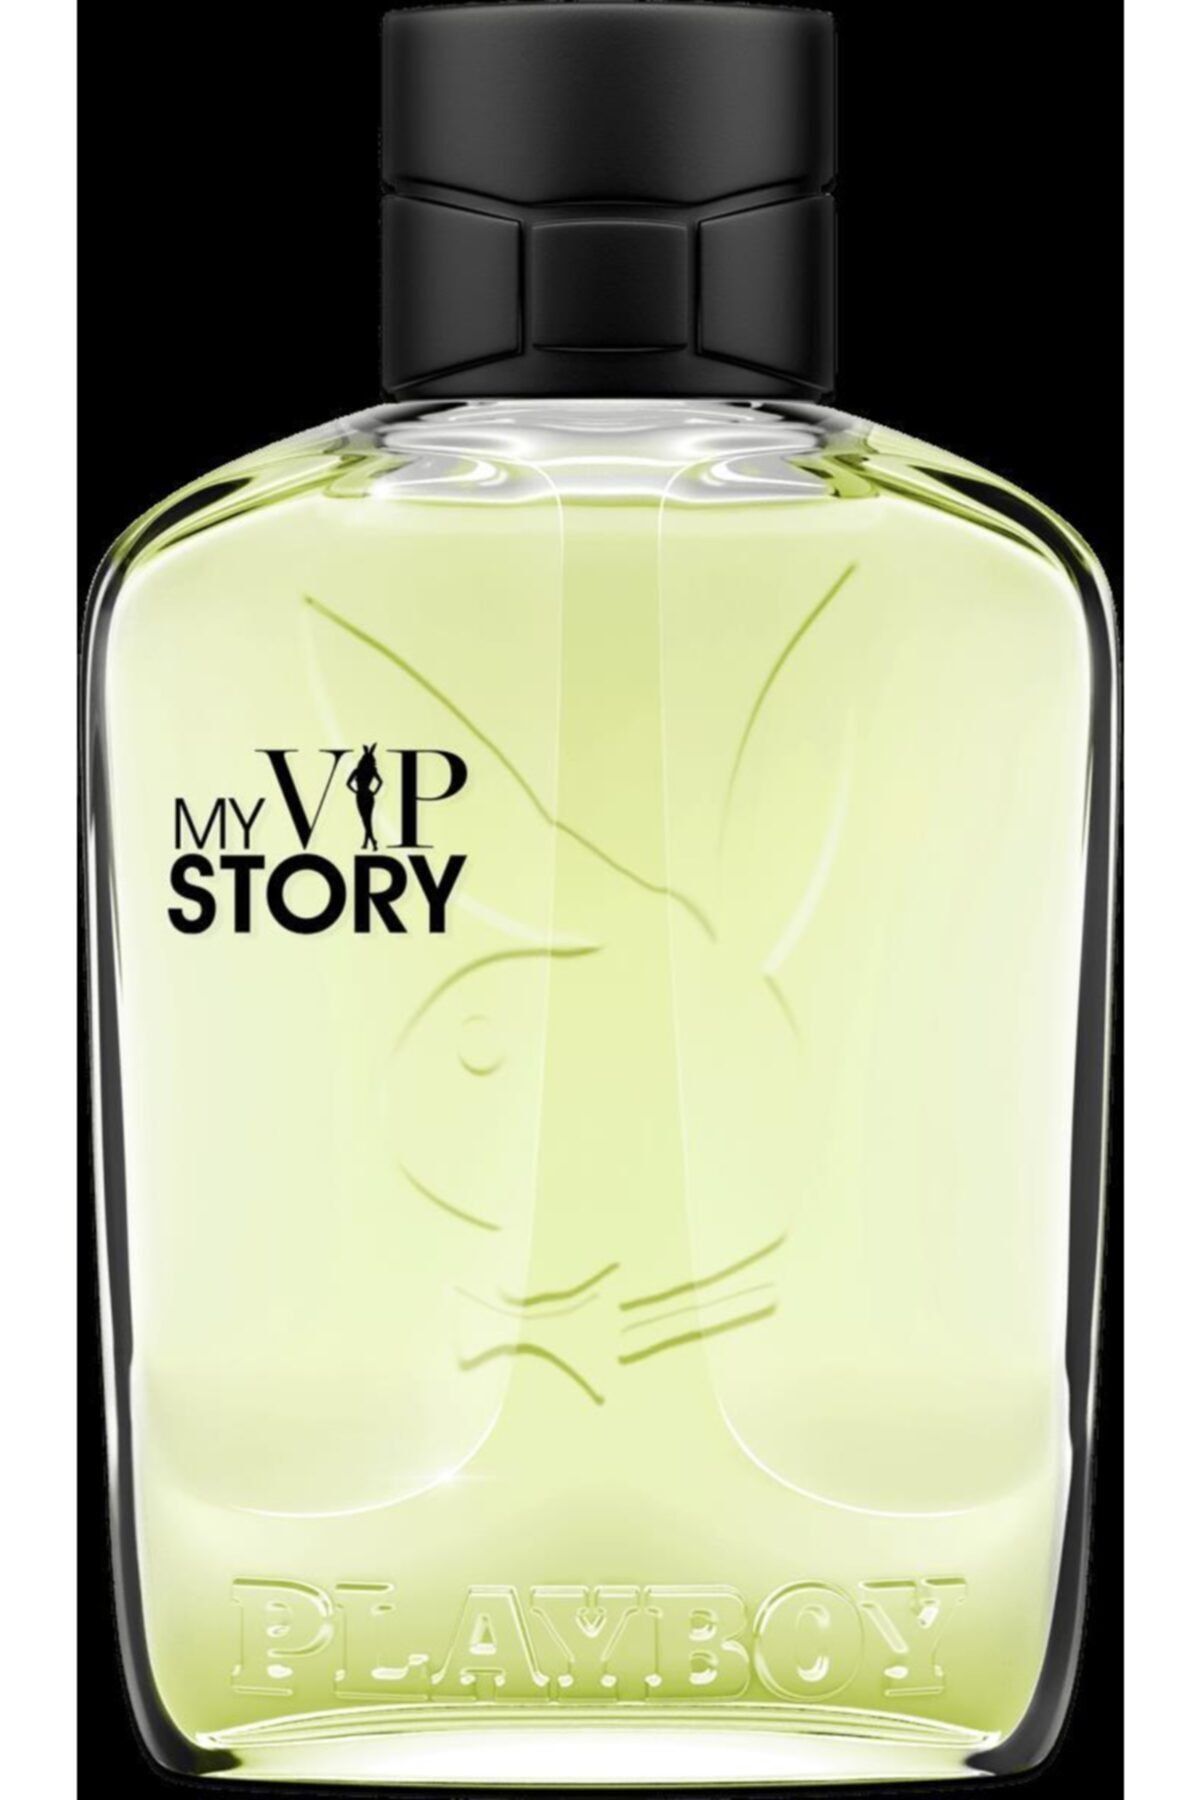 Playboy My VIP Story EDT 100 ml Erkek Parfüm